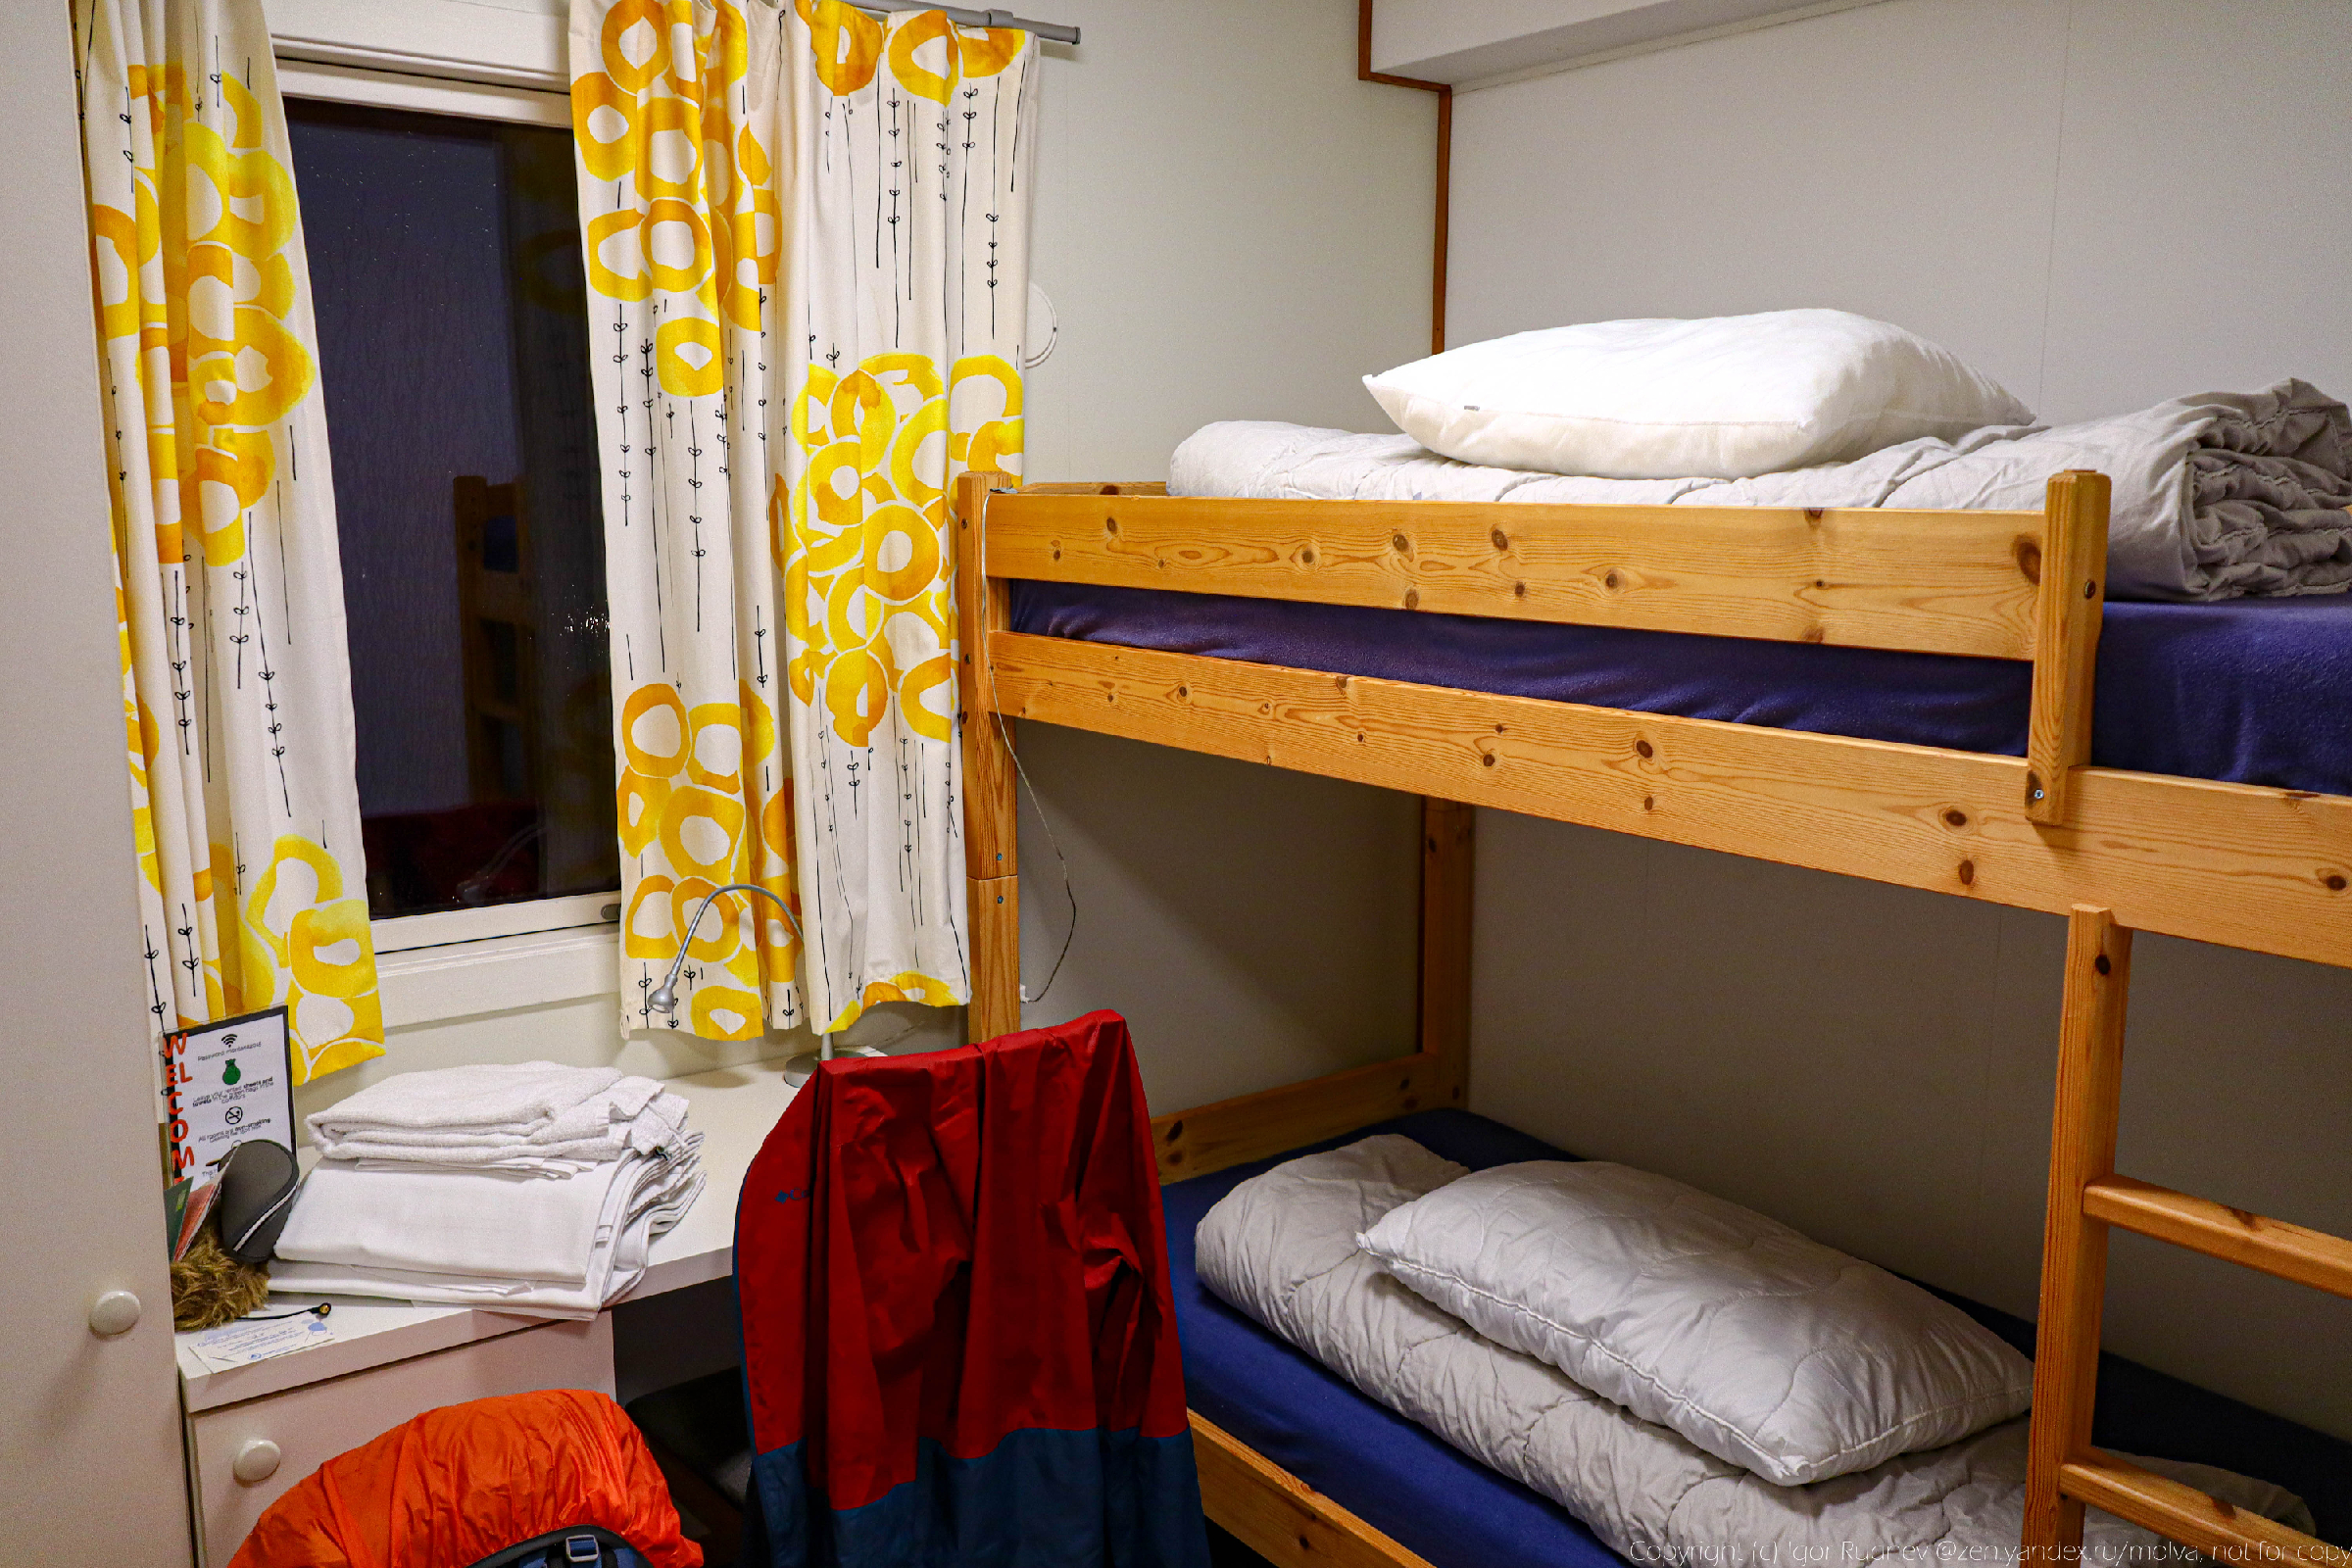 Как выглядит комната хостела в Норвегии за 6000 рублей за ночь. Вы наверняка не захотите здесь остановиться2